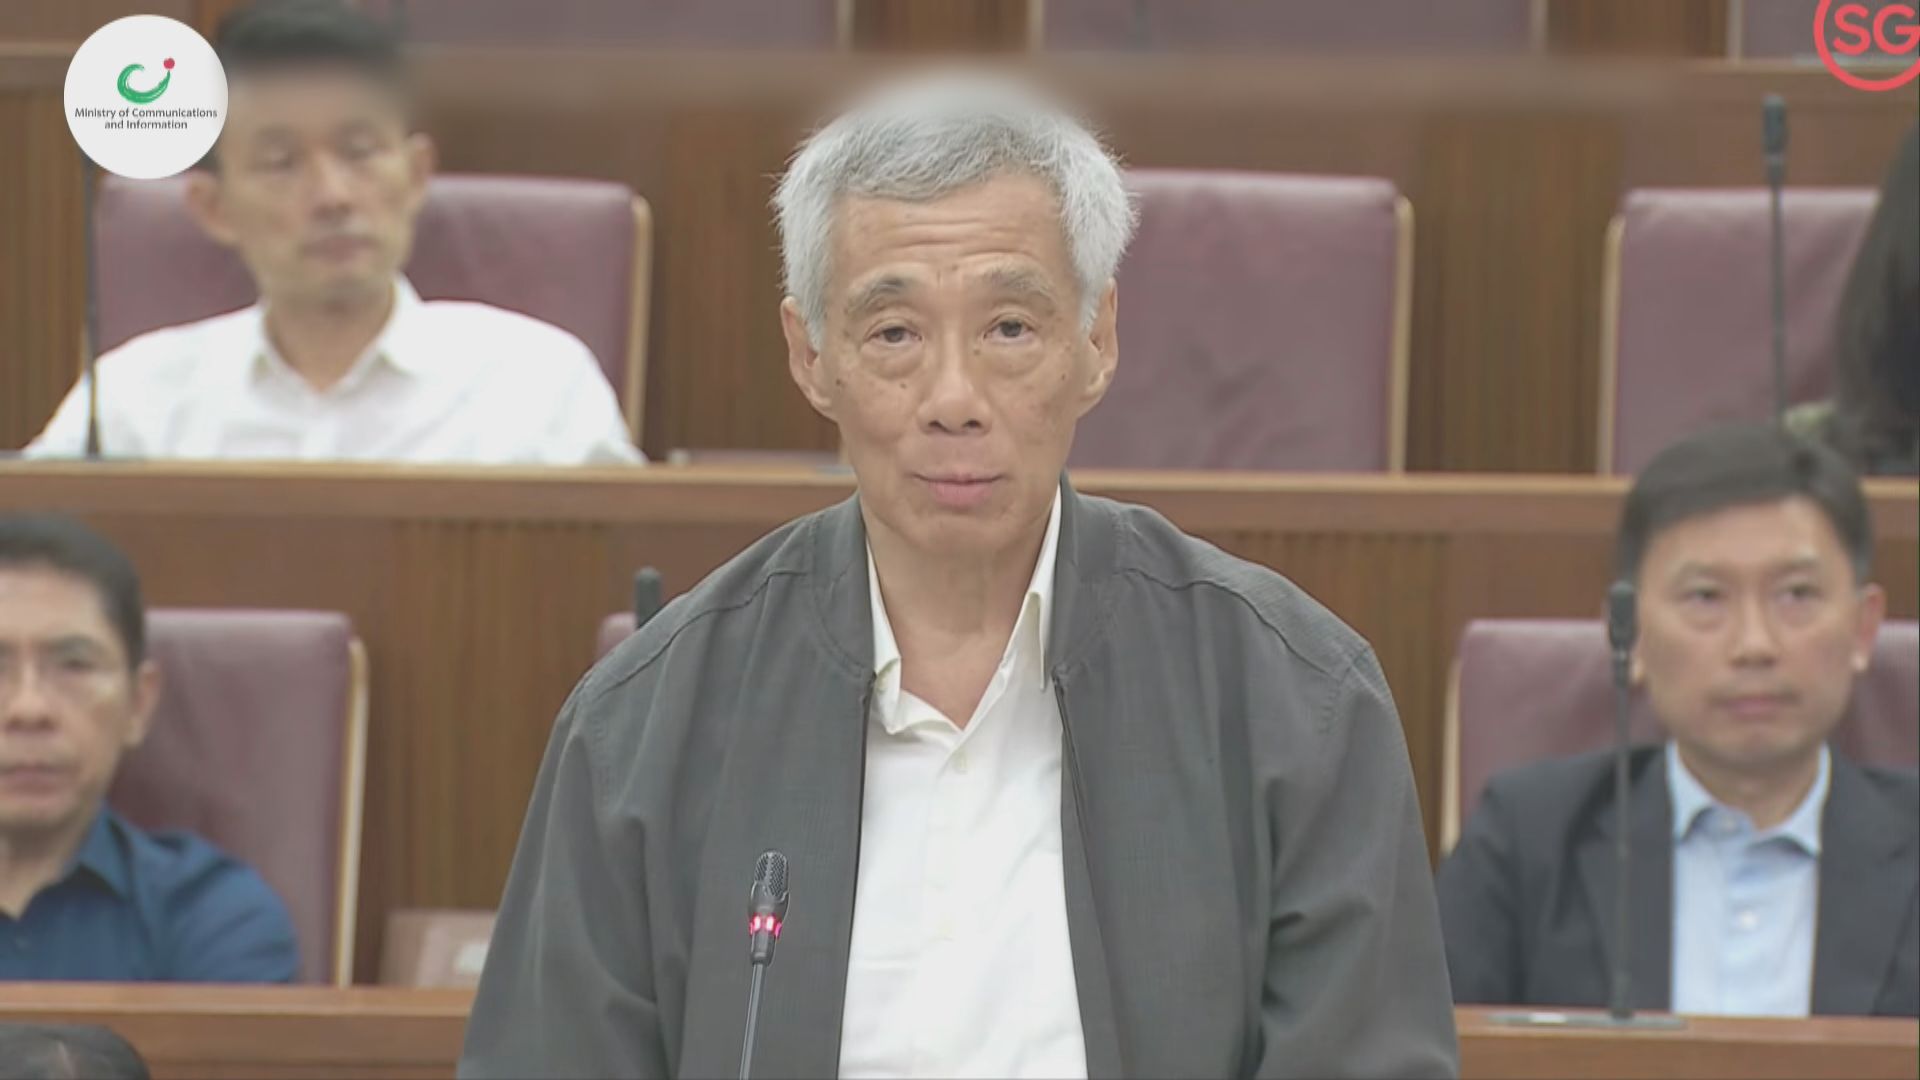 新加坡總理李顯龍回應政府醜聞 指會堅守準則取得國民信任